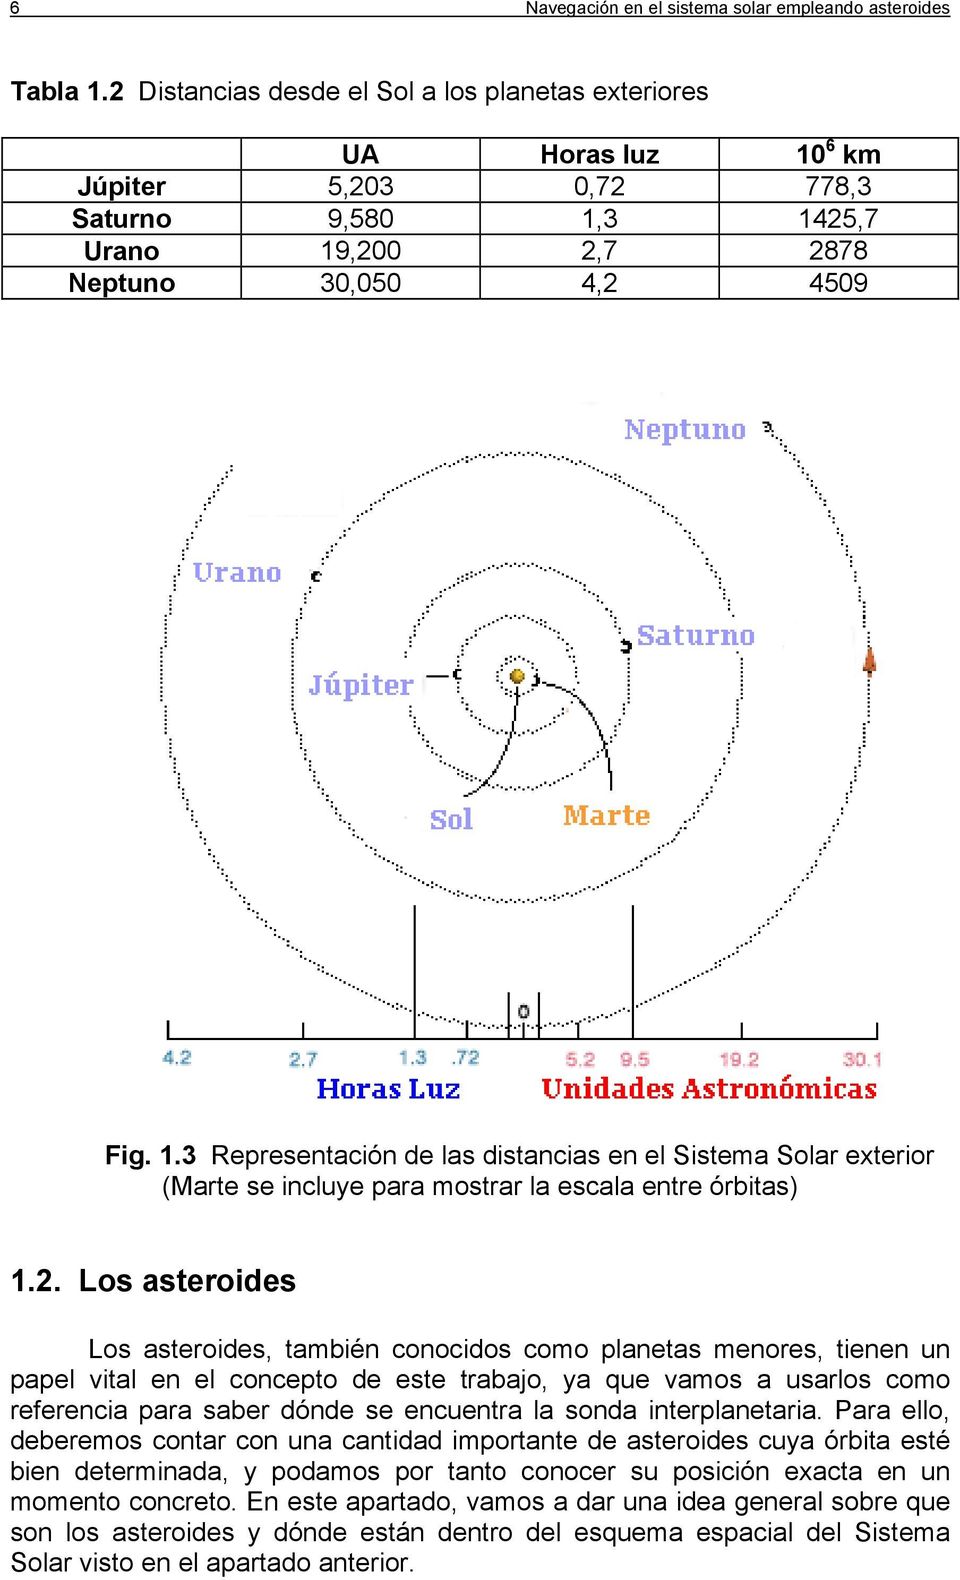 .3 Representaón de las dstanas en el Sstema Solar exteror (Marte se nluye para mostrar la esala entre órbtas).2.